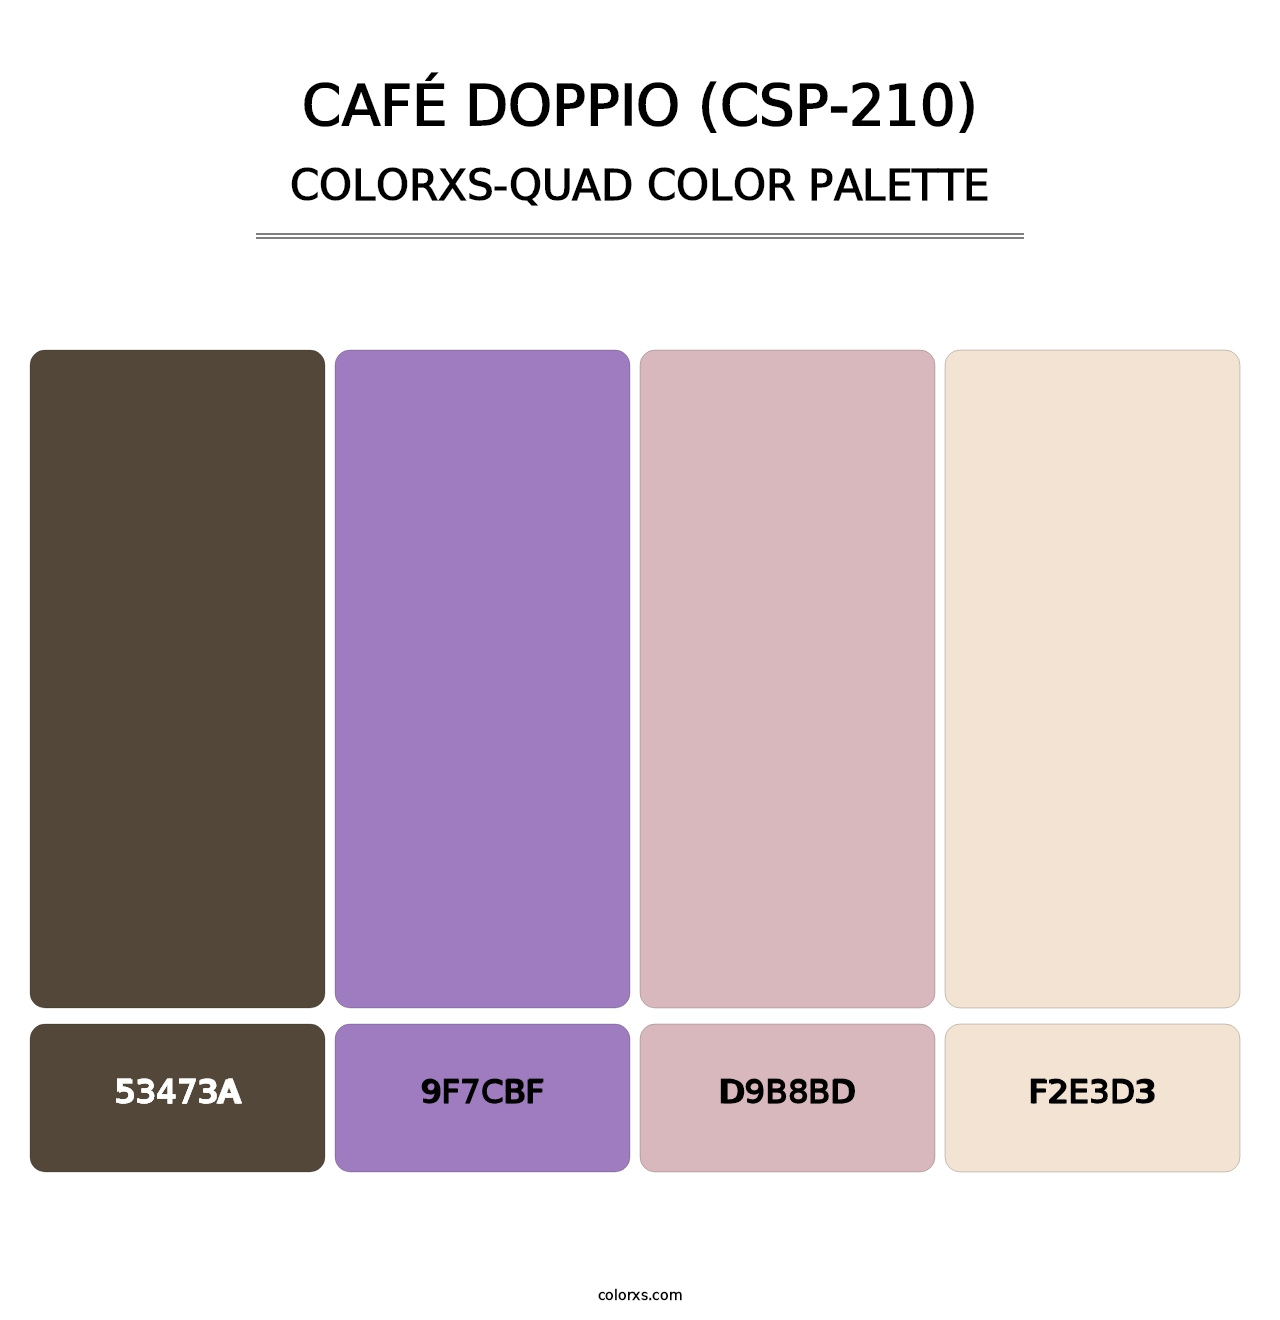 Café Doppio (CSP-210) - Colorxs Quad Palette